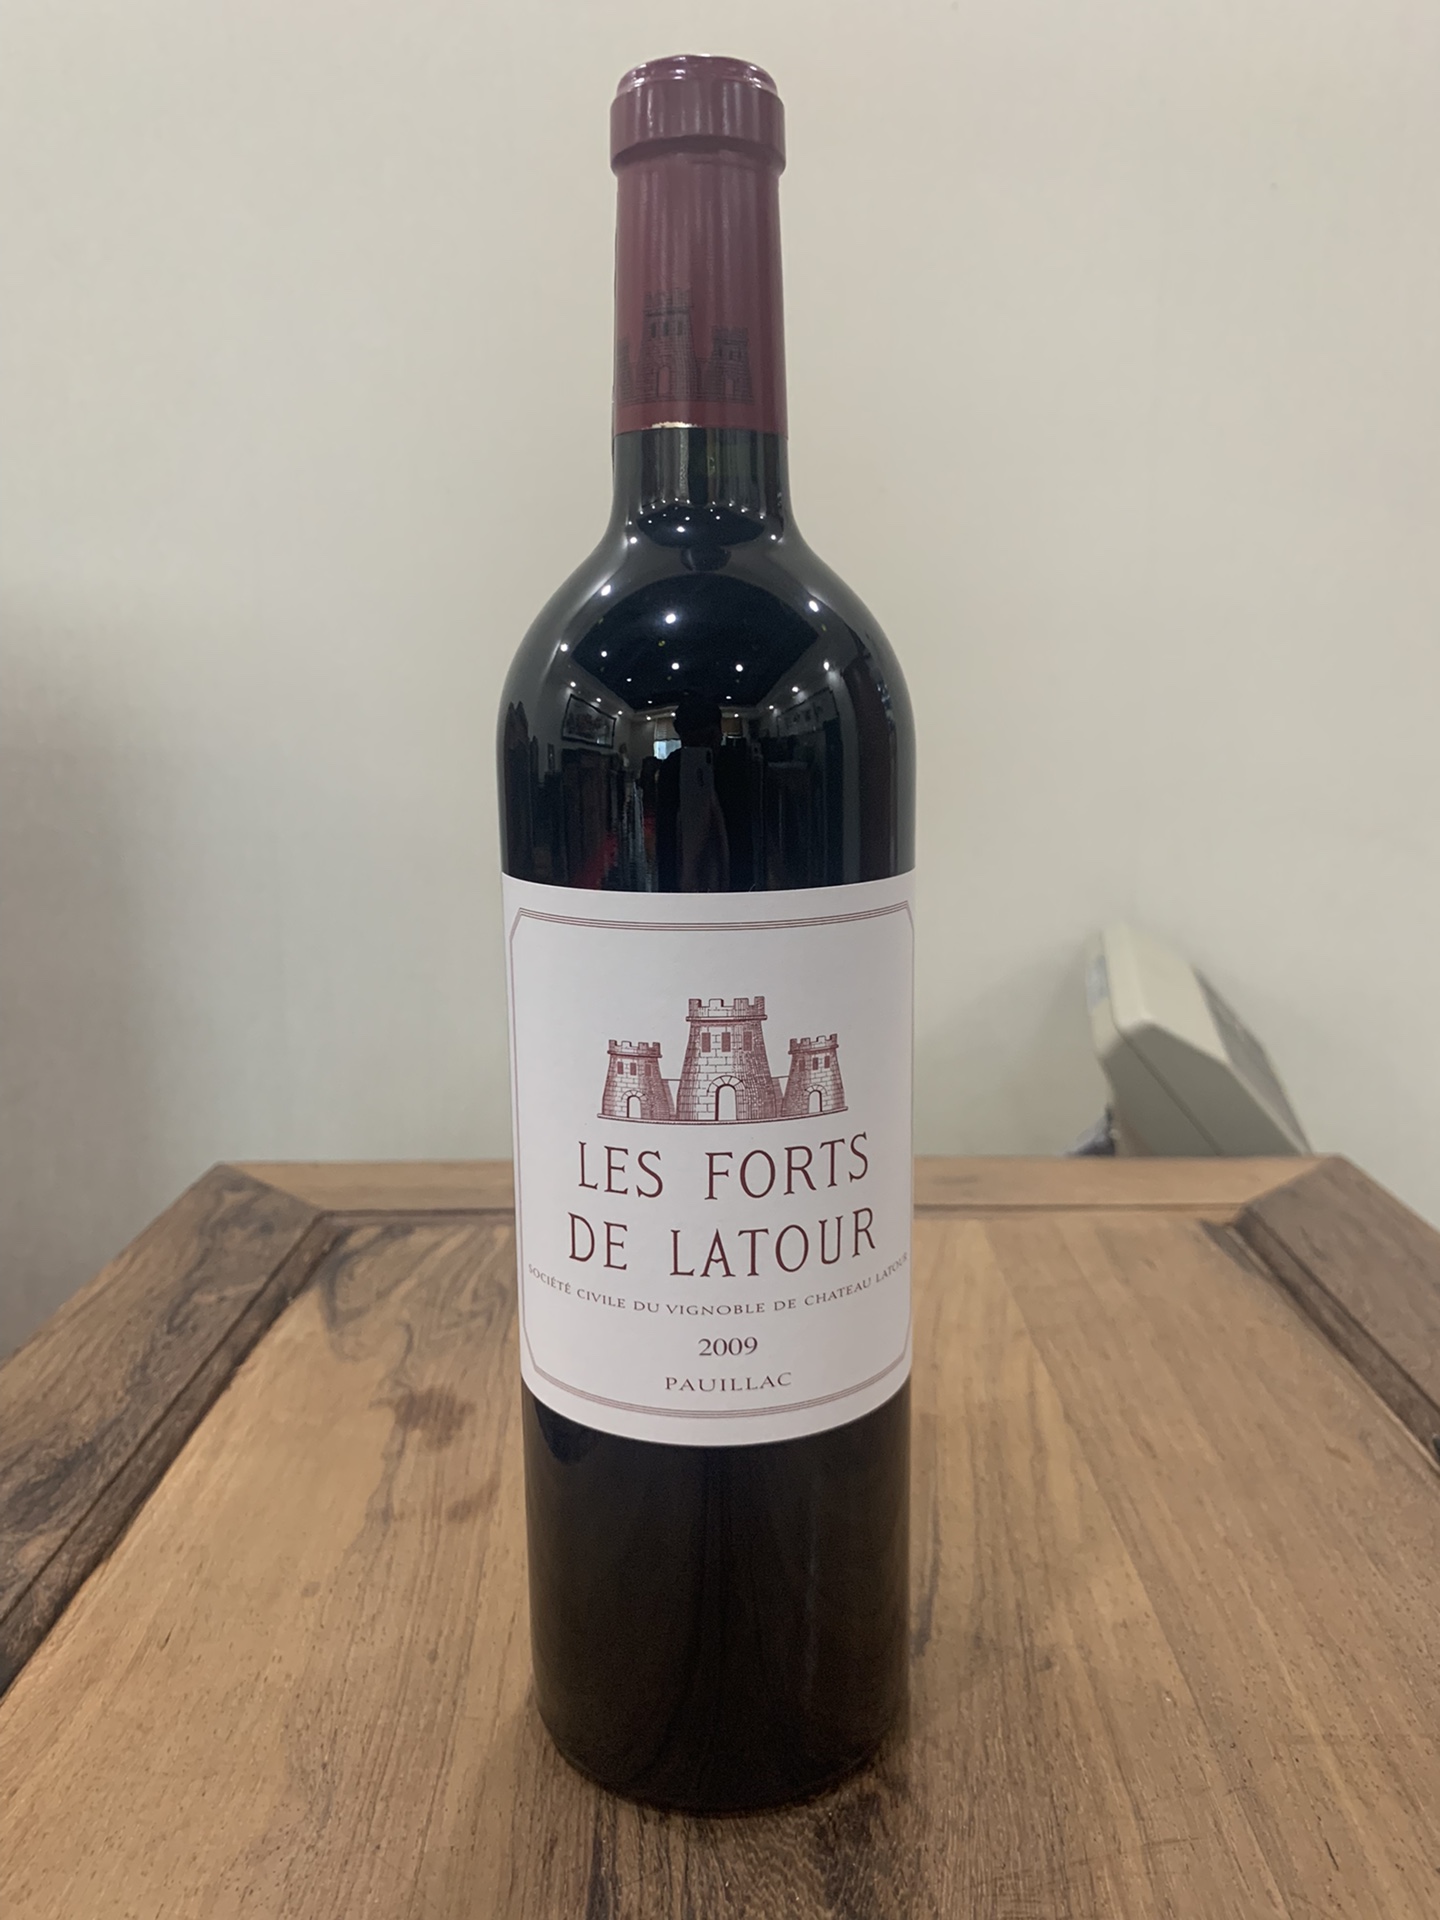 拉图庄园副牌干红葡萄酒2009年Les Forts De Latour小拉图